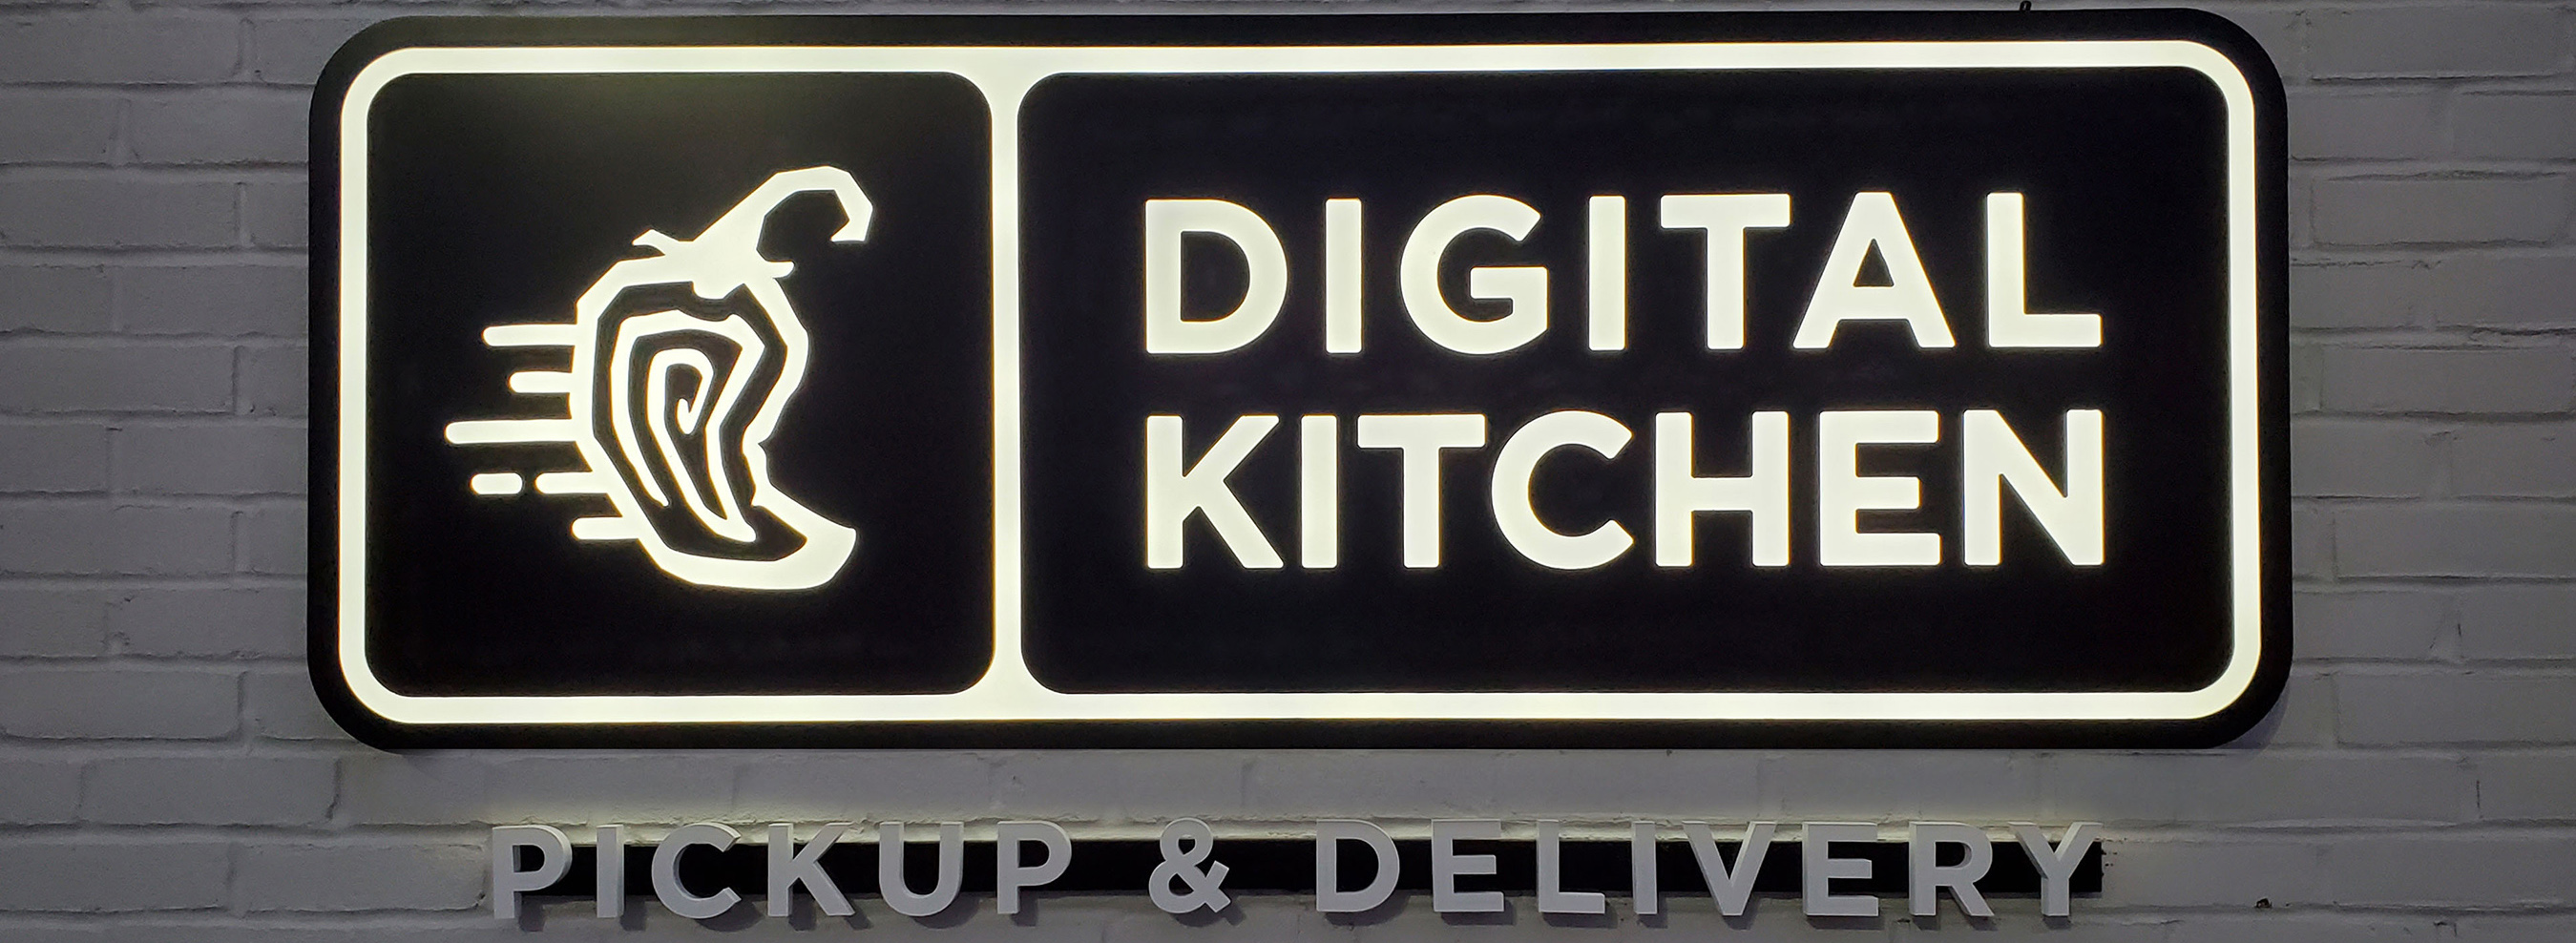 Chipotle Digital Kitchen